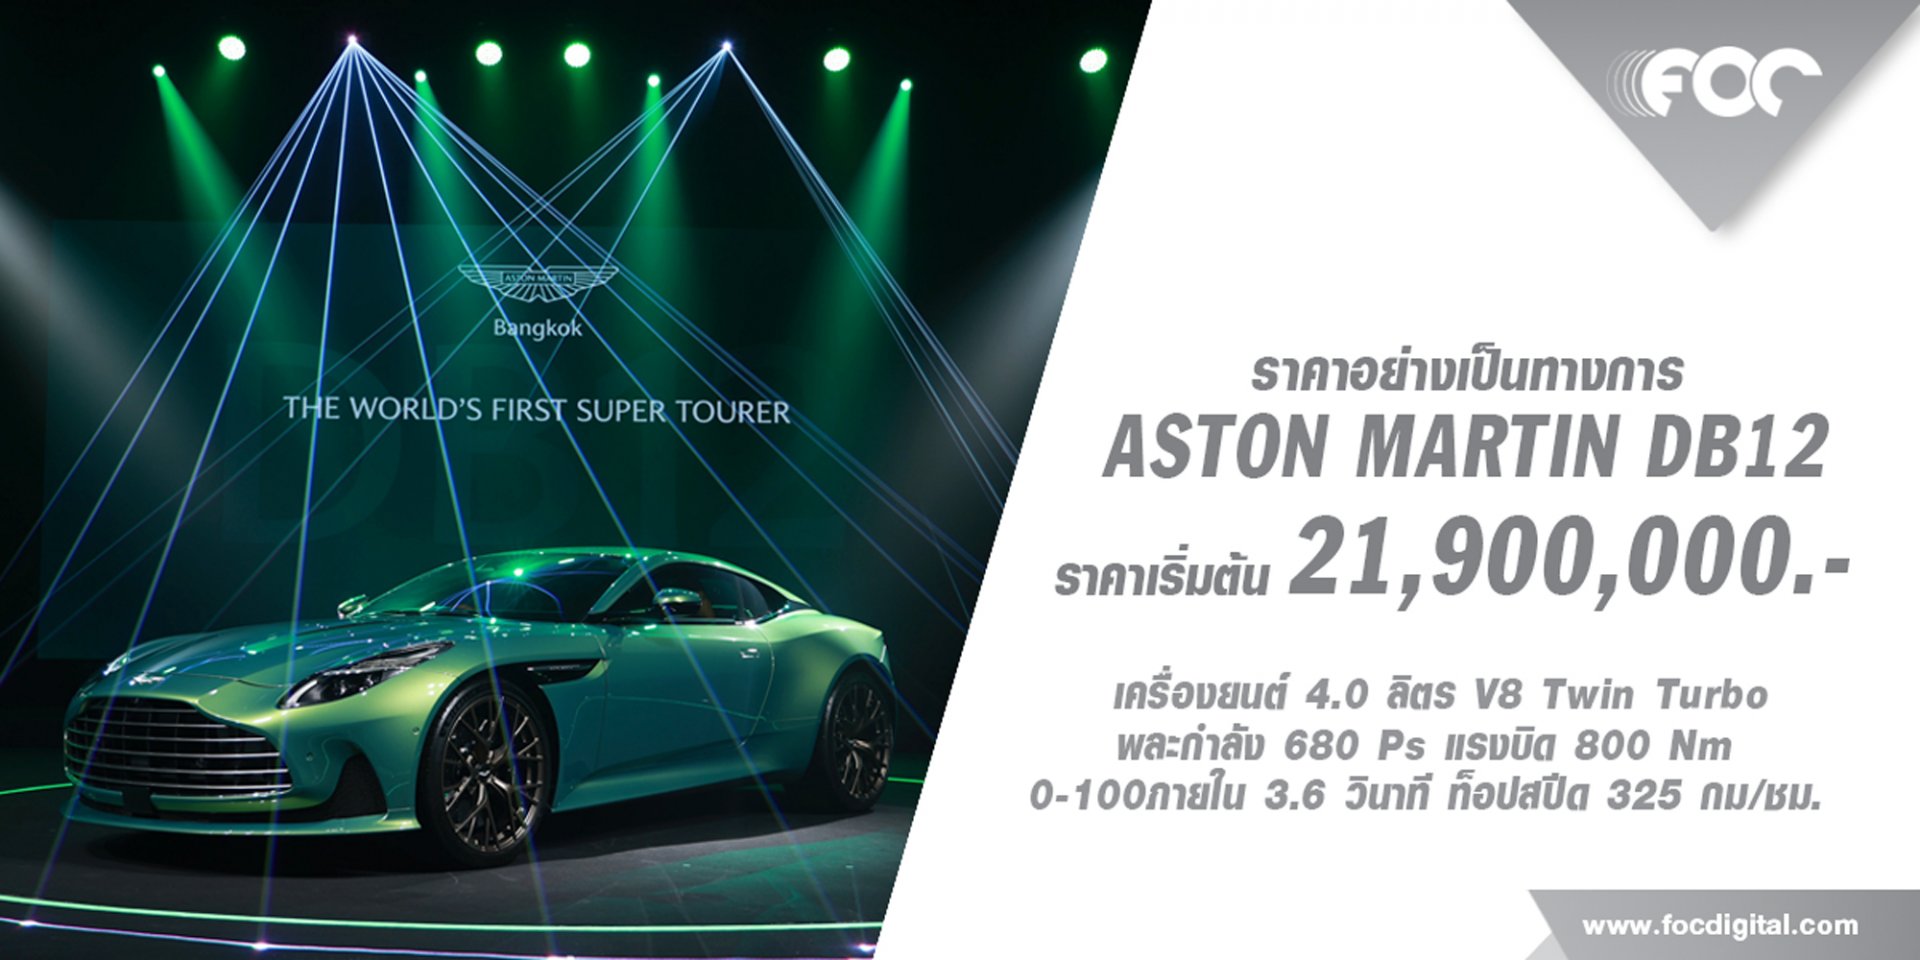 แอสตัน มาร์ติน แบงคอก ฉลองครบรอบ 75 ปี เปิดตัว Aston Martin DB12 ในราคาเริ่มต้นที่ 21,900,000 บาท 